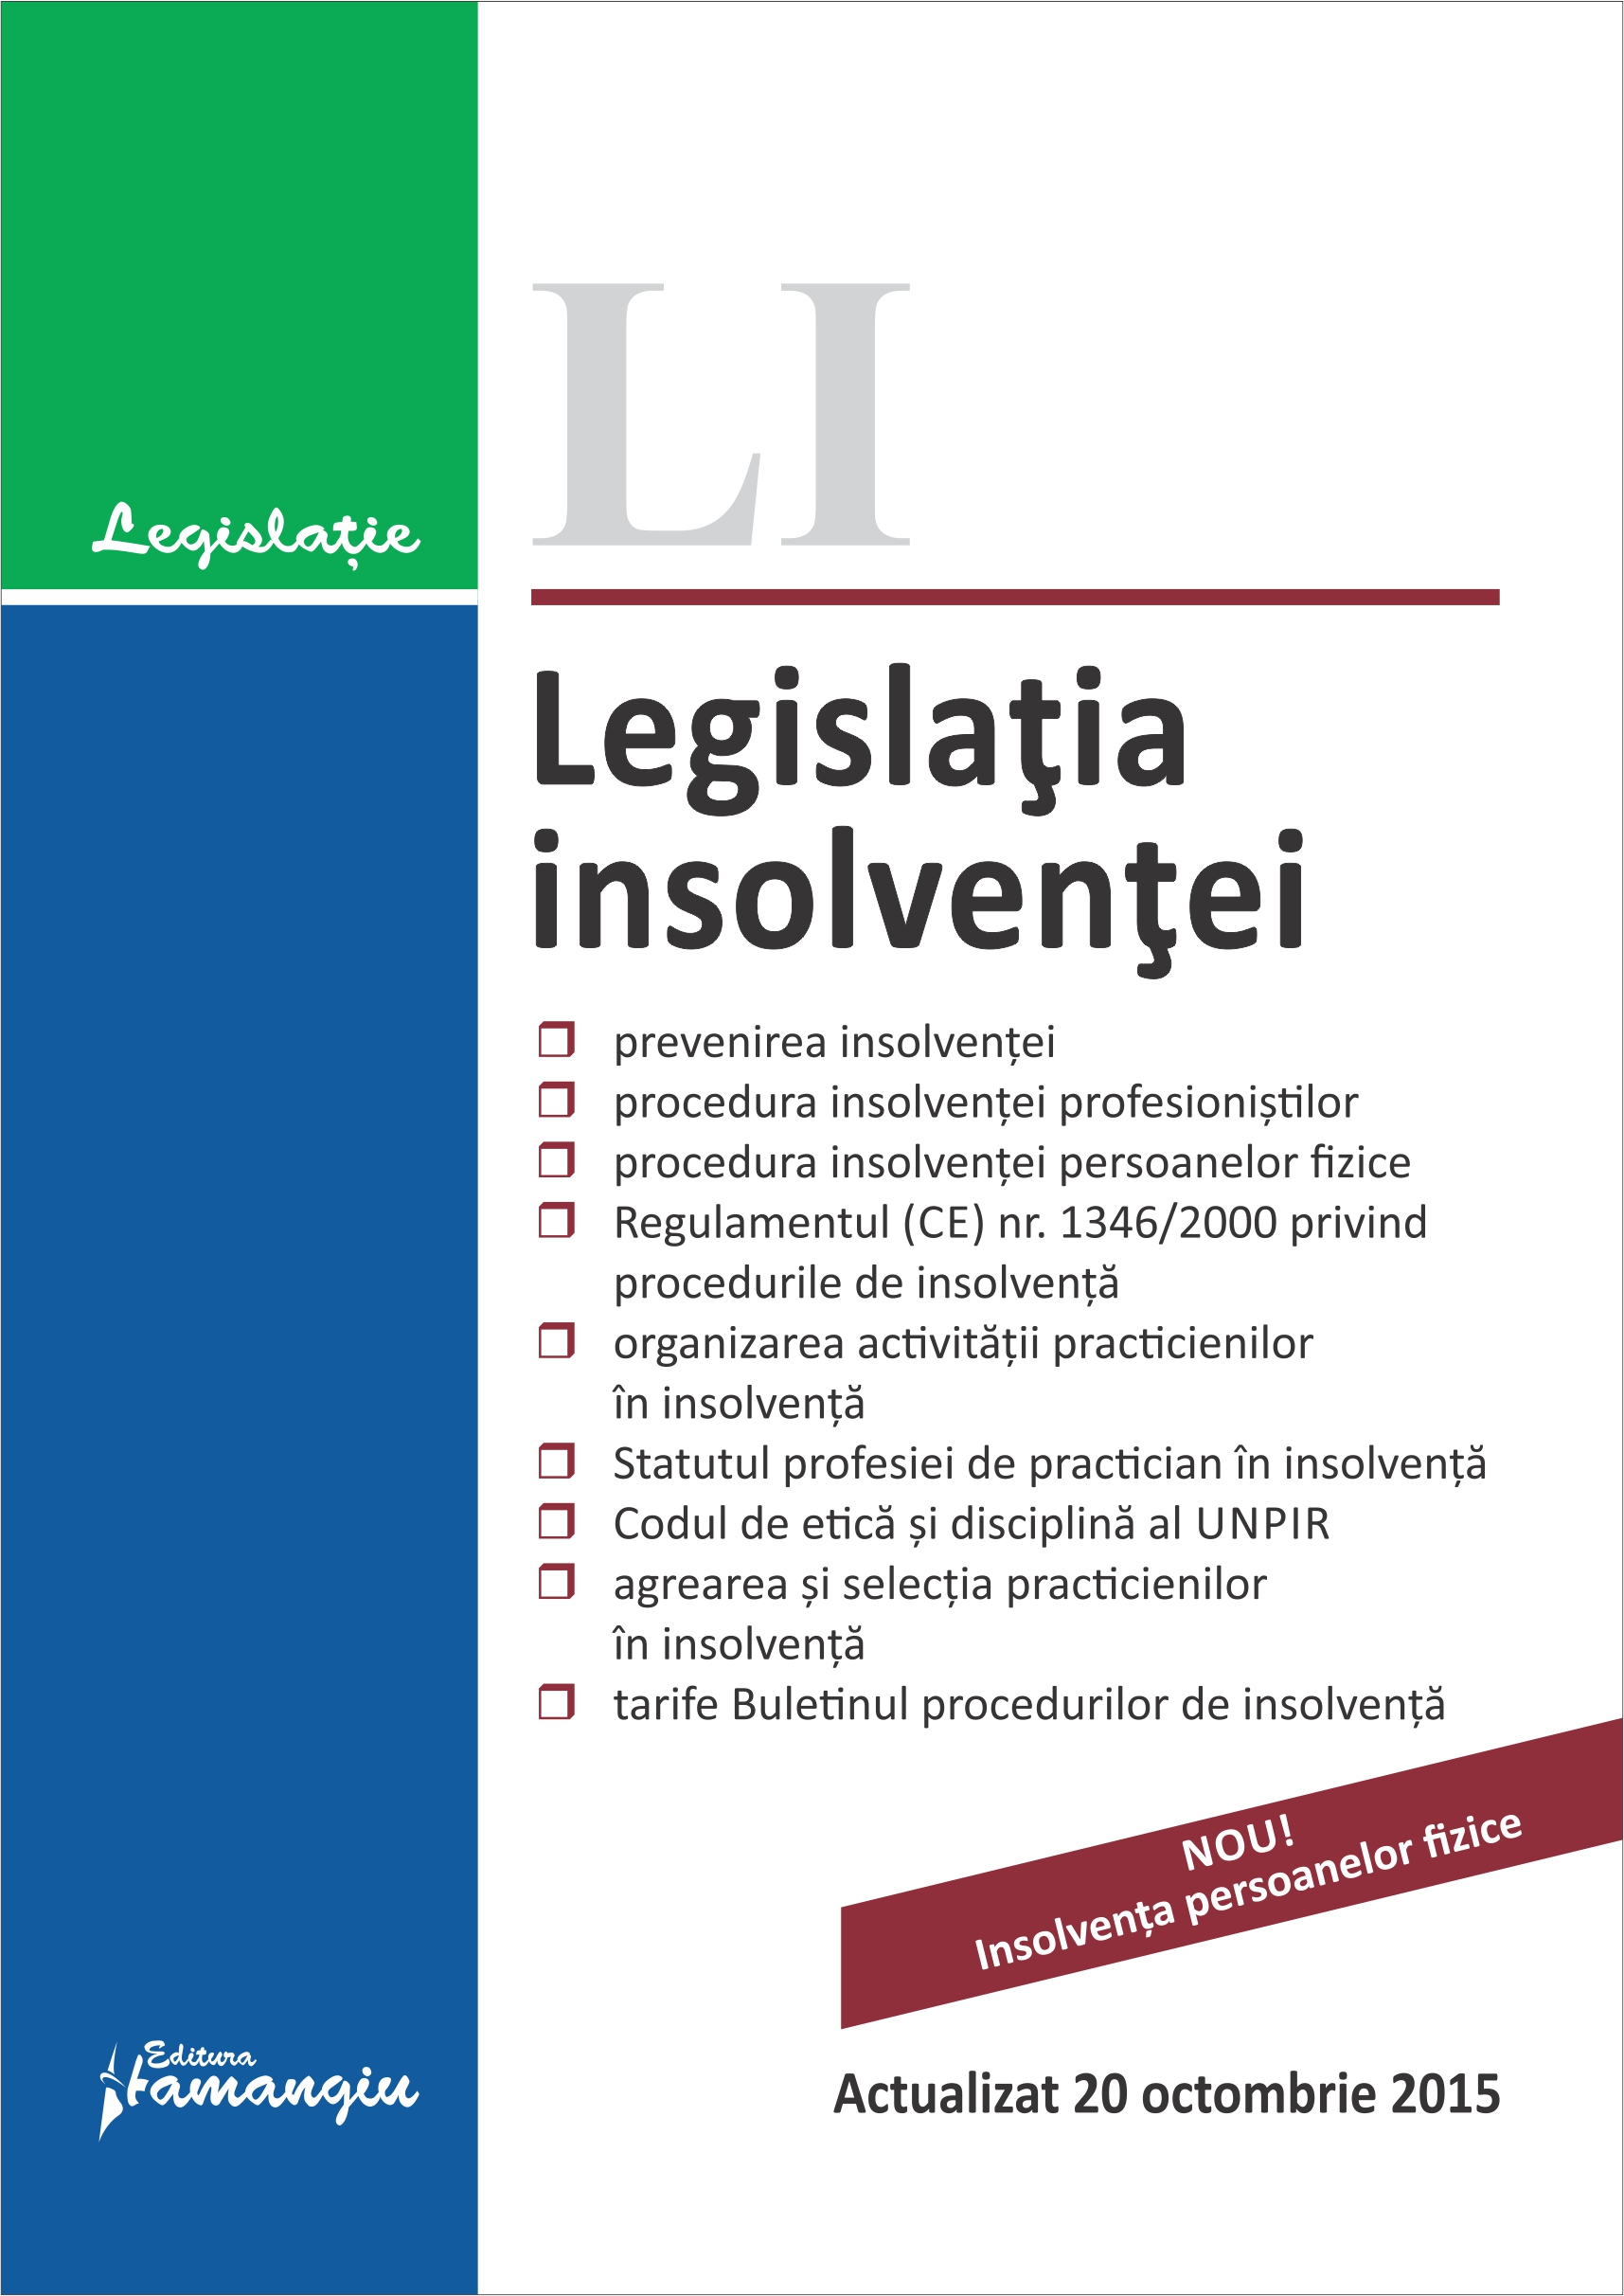 Legislatia insolventei act. 20 octombrie 2015